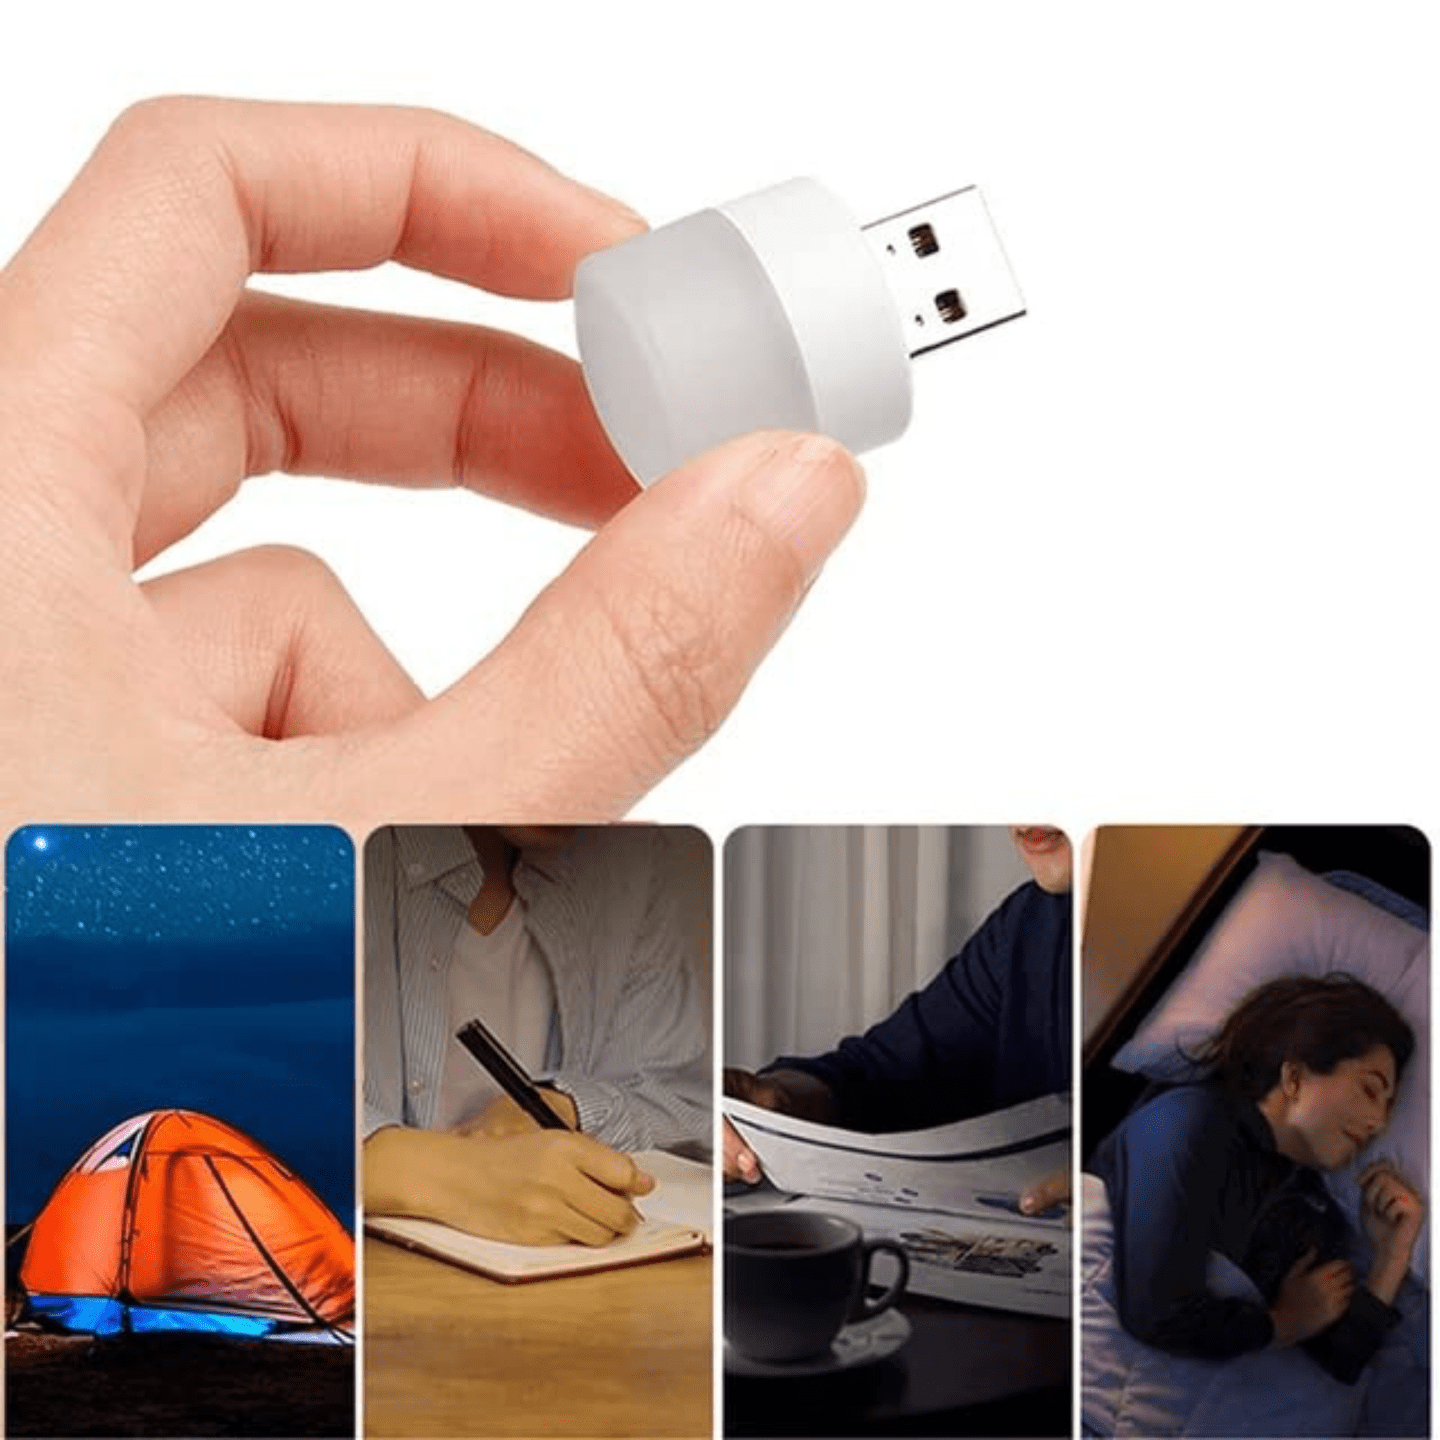 Portable Mini USB LED Lamp 1 watt - White light